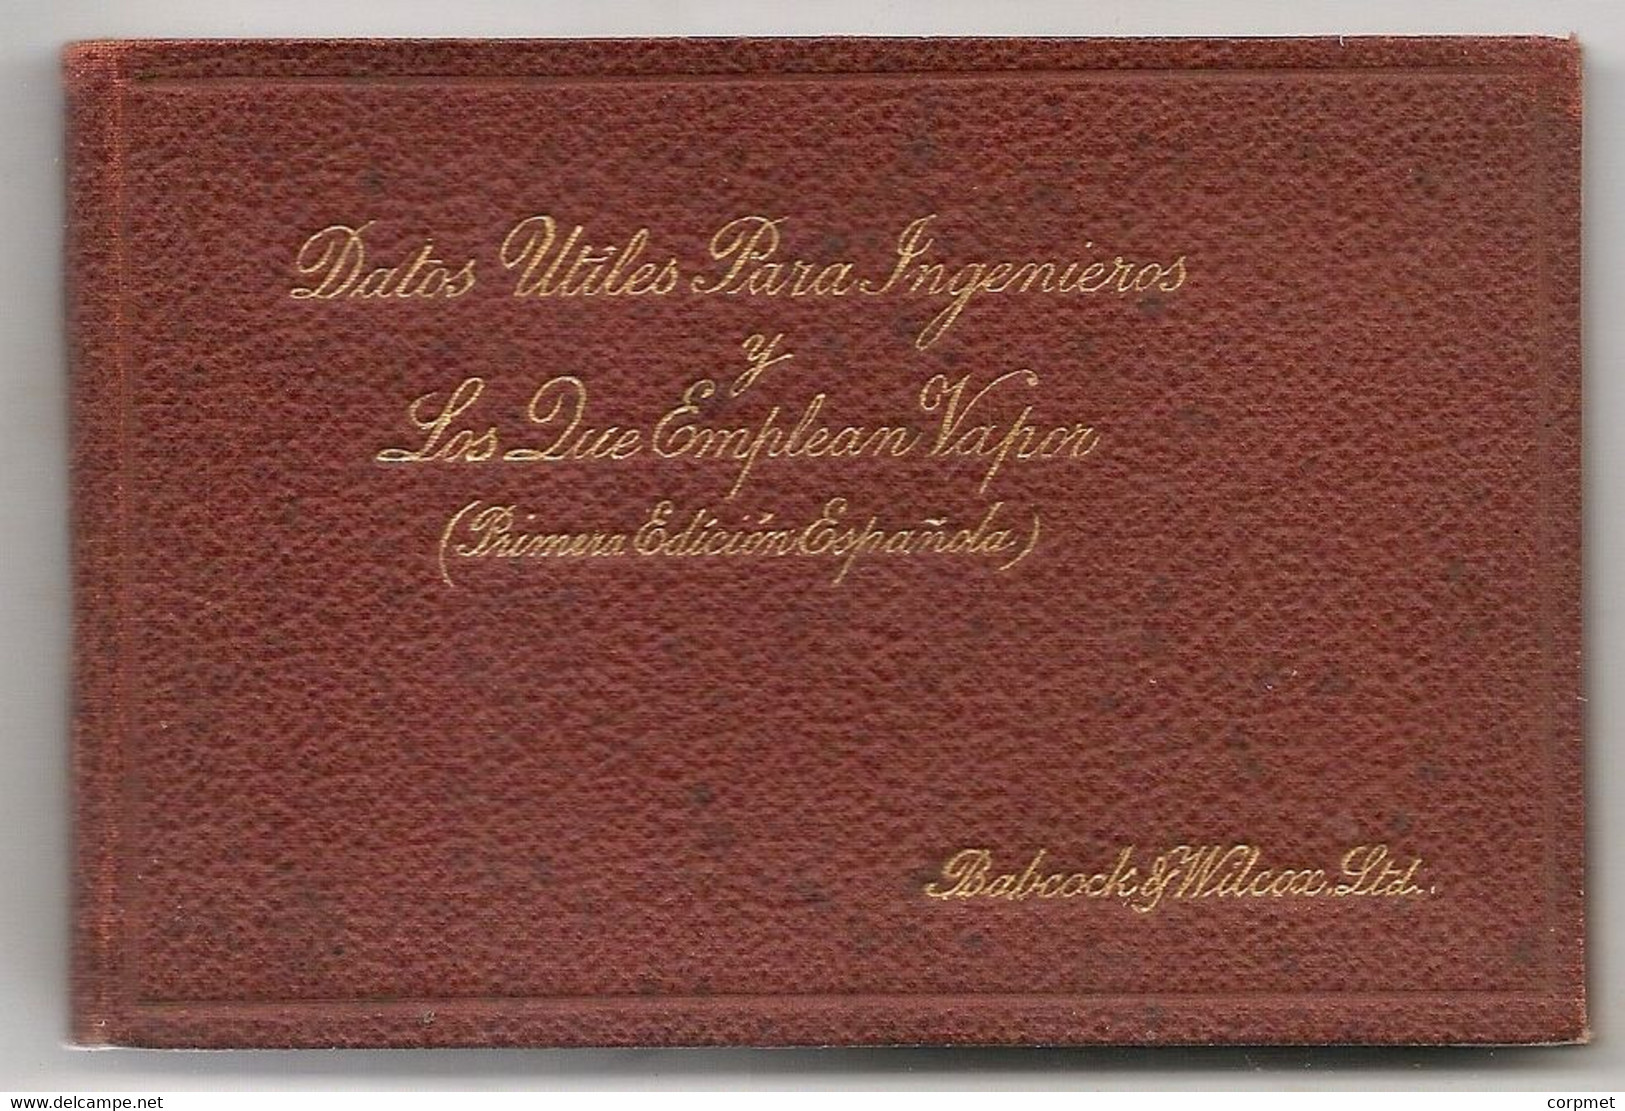 LIBRO MINIATURA DATOS UTILES PARA LOS QUE EMPLEAN VAPOR 1ra EDIC ESPAÑOLA 1914 BABCOCK Y WILCOX Ltd - Craft, Manual Arts